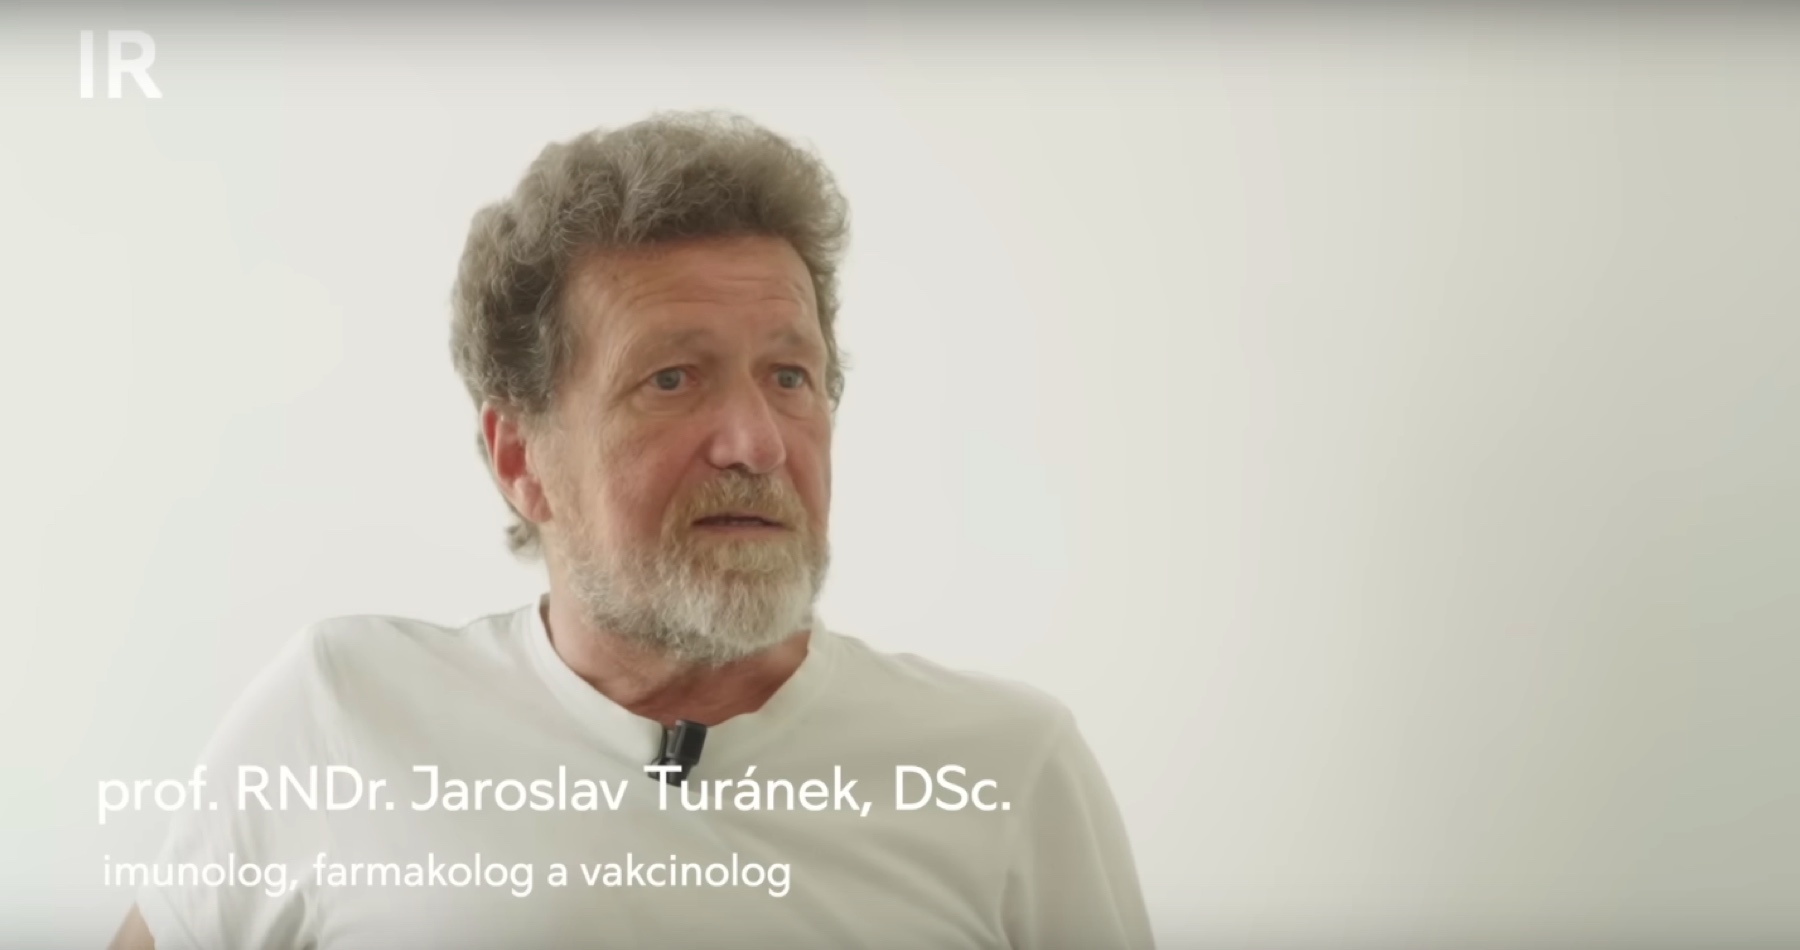 VIDEO: Profesor Jaroslav Turánek o súdnych procesoch vo svete kvôli negatívnym účinkom proticovidových injekcií, množstve nevysvetliteľných náhlych úmrtí mladých ľudí, zločine v podobe umožniť pichať netestované vakcíny proti ochoreniu Covid-19 deťom, (ne)slobode vo vedeckom bádaní, cenzúre závažných zdravotných informácií a skorumpovaných médiách: „Toto tu máme 33 rokov po roku 1989. Niečo také som nezažil ani za komunizmu, kedy nebol primárnym cieľom zisk, ale zdravie. V rozhodujúcich funkciách máme slaboduchých a neskúsených ľudí. Kam sme sa to dostali? Pravda sa nedá umlčať!“